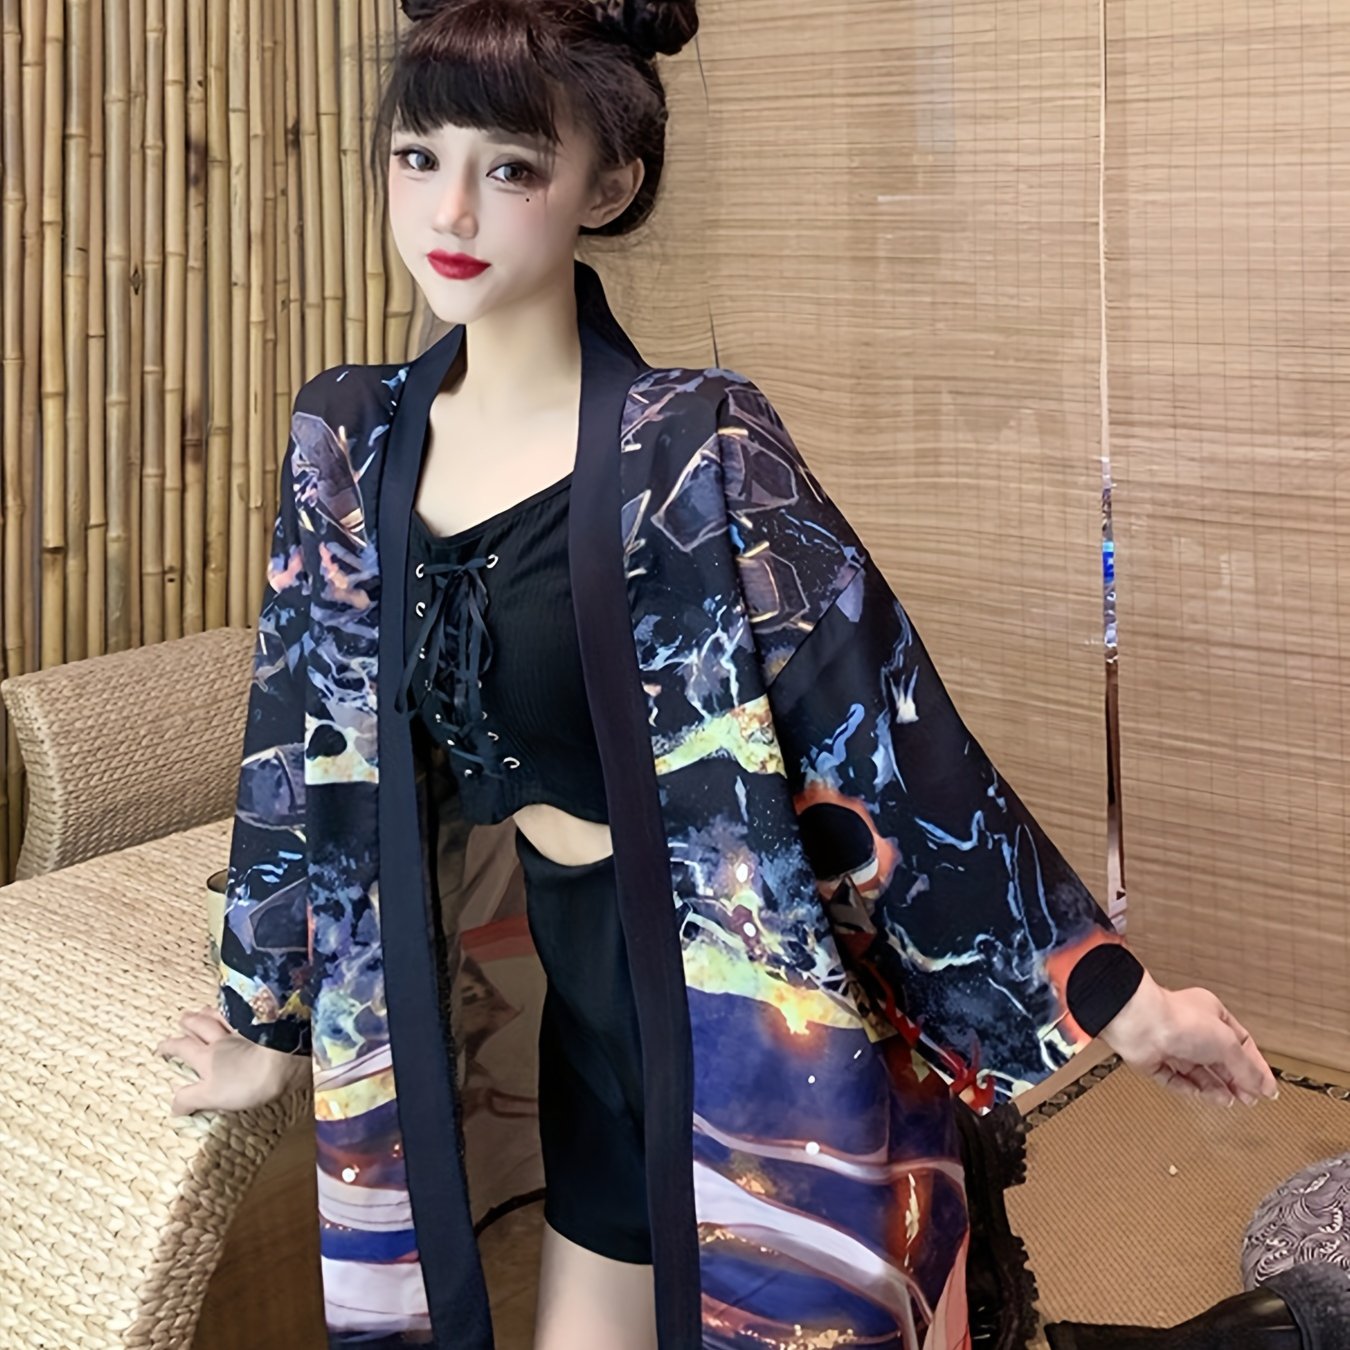 anime print open front kimono vintage 3 4 sleeve kimonos for festival womens clothing